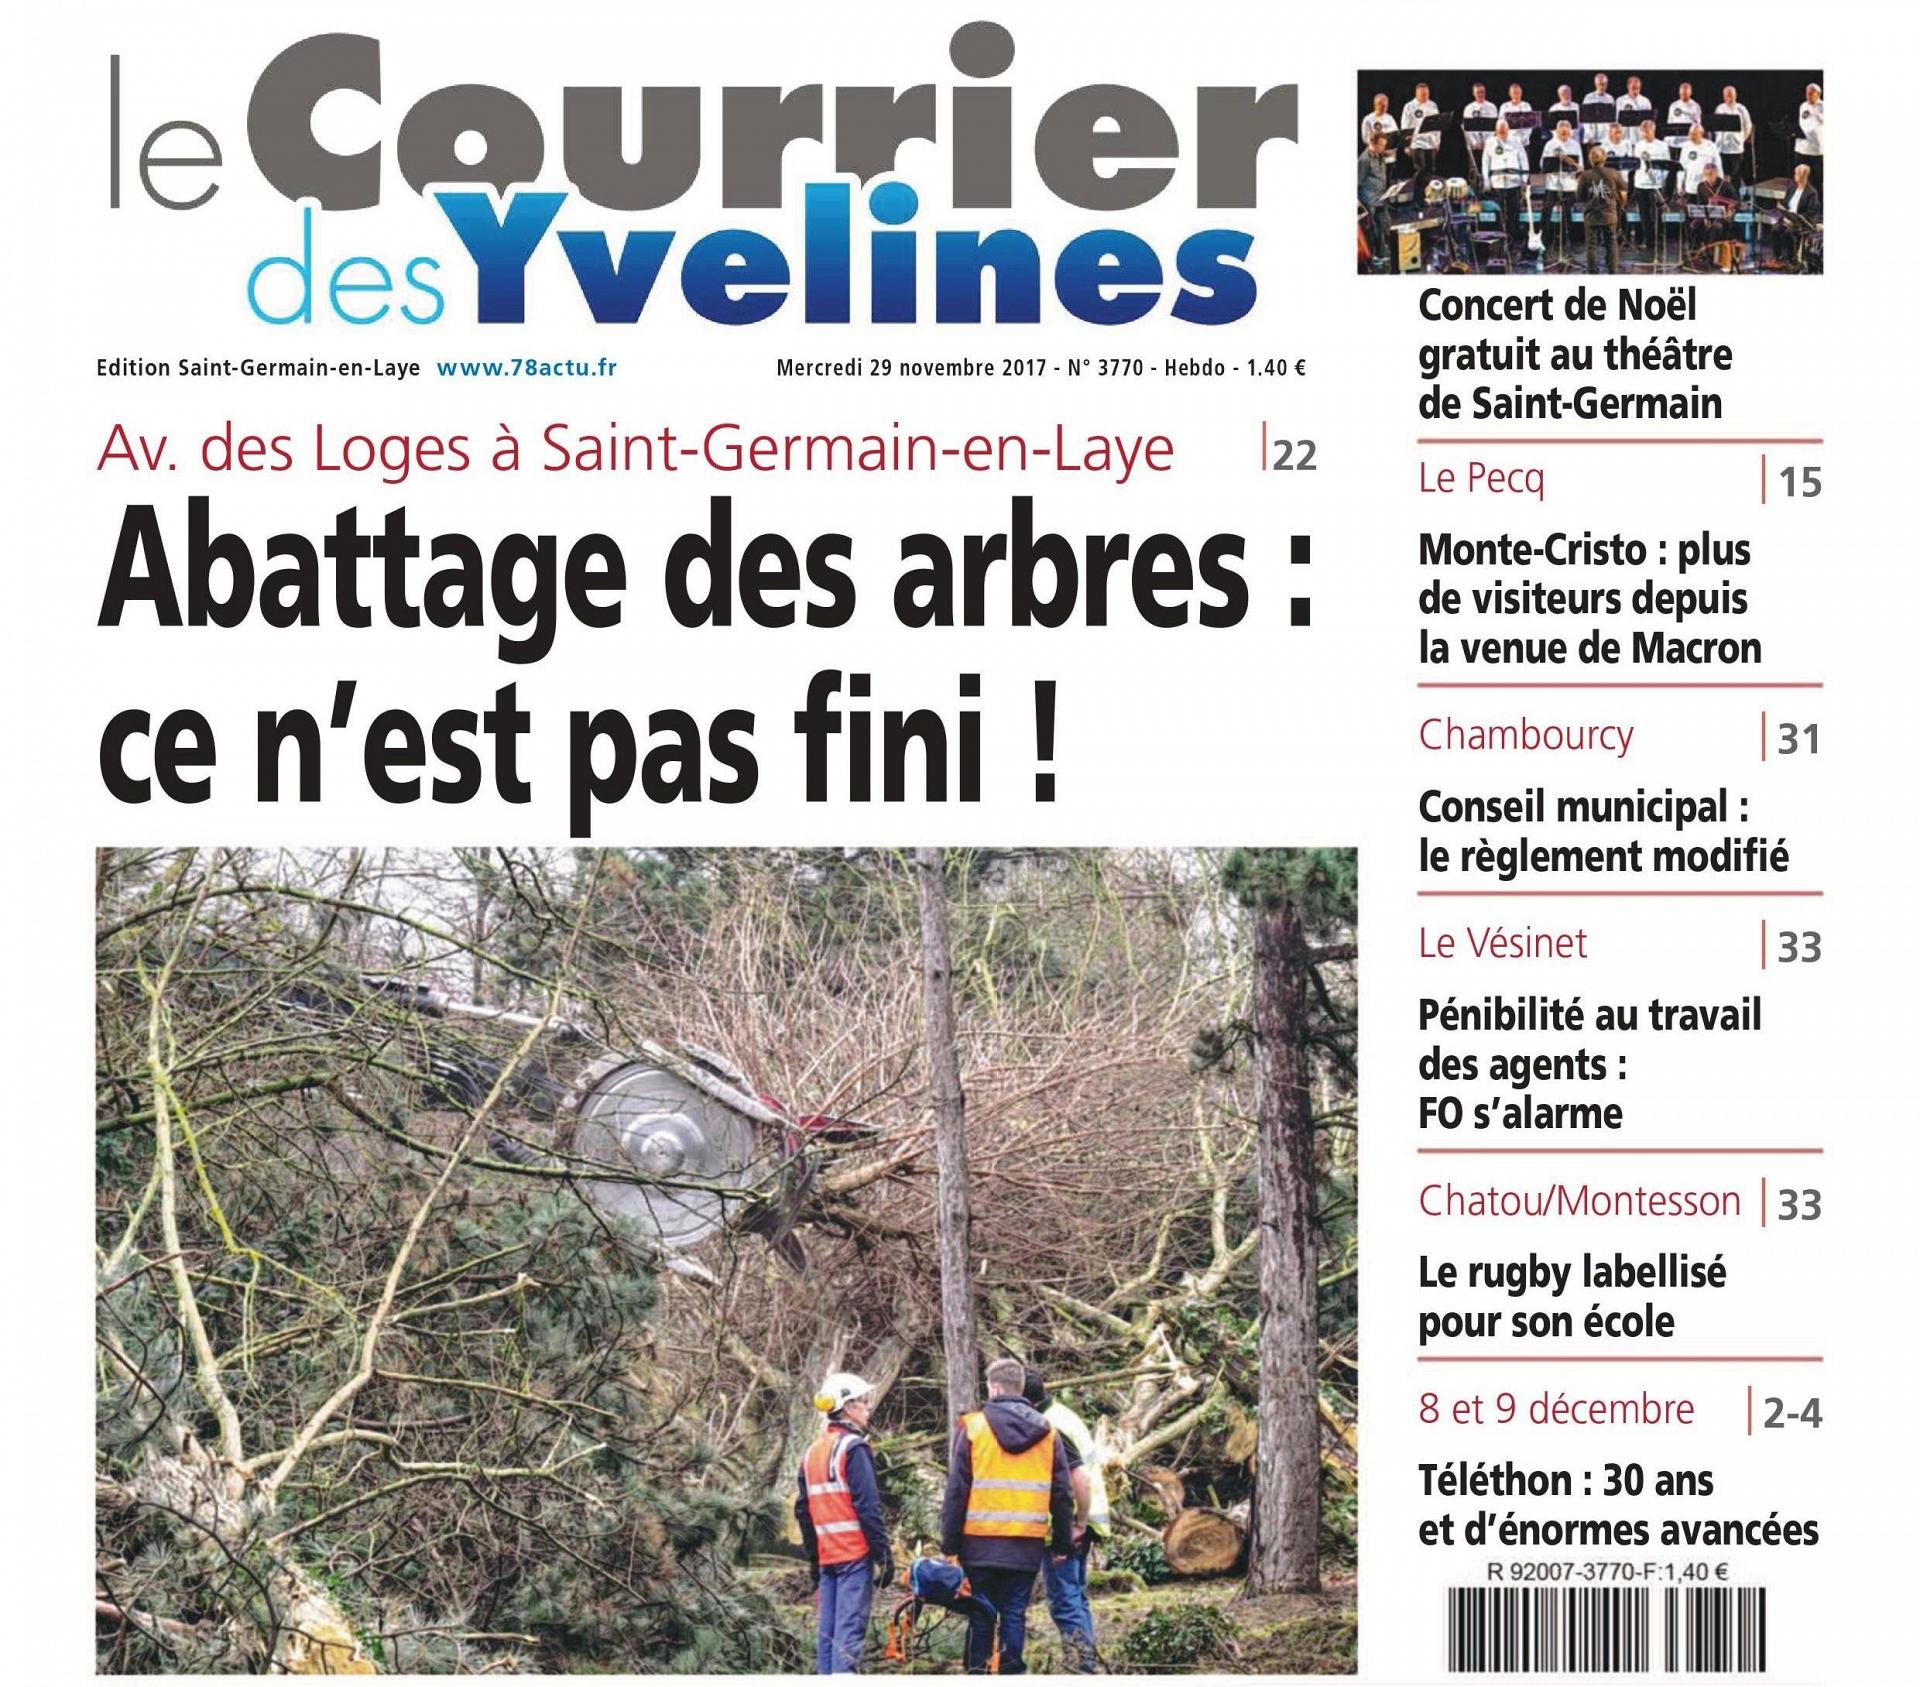 Le Courrier des Yvelines du 29 novembre 2017 Sites & Monuments - SPPEF (1)